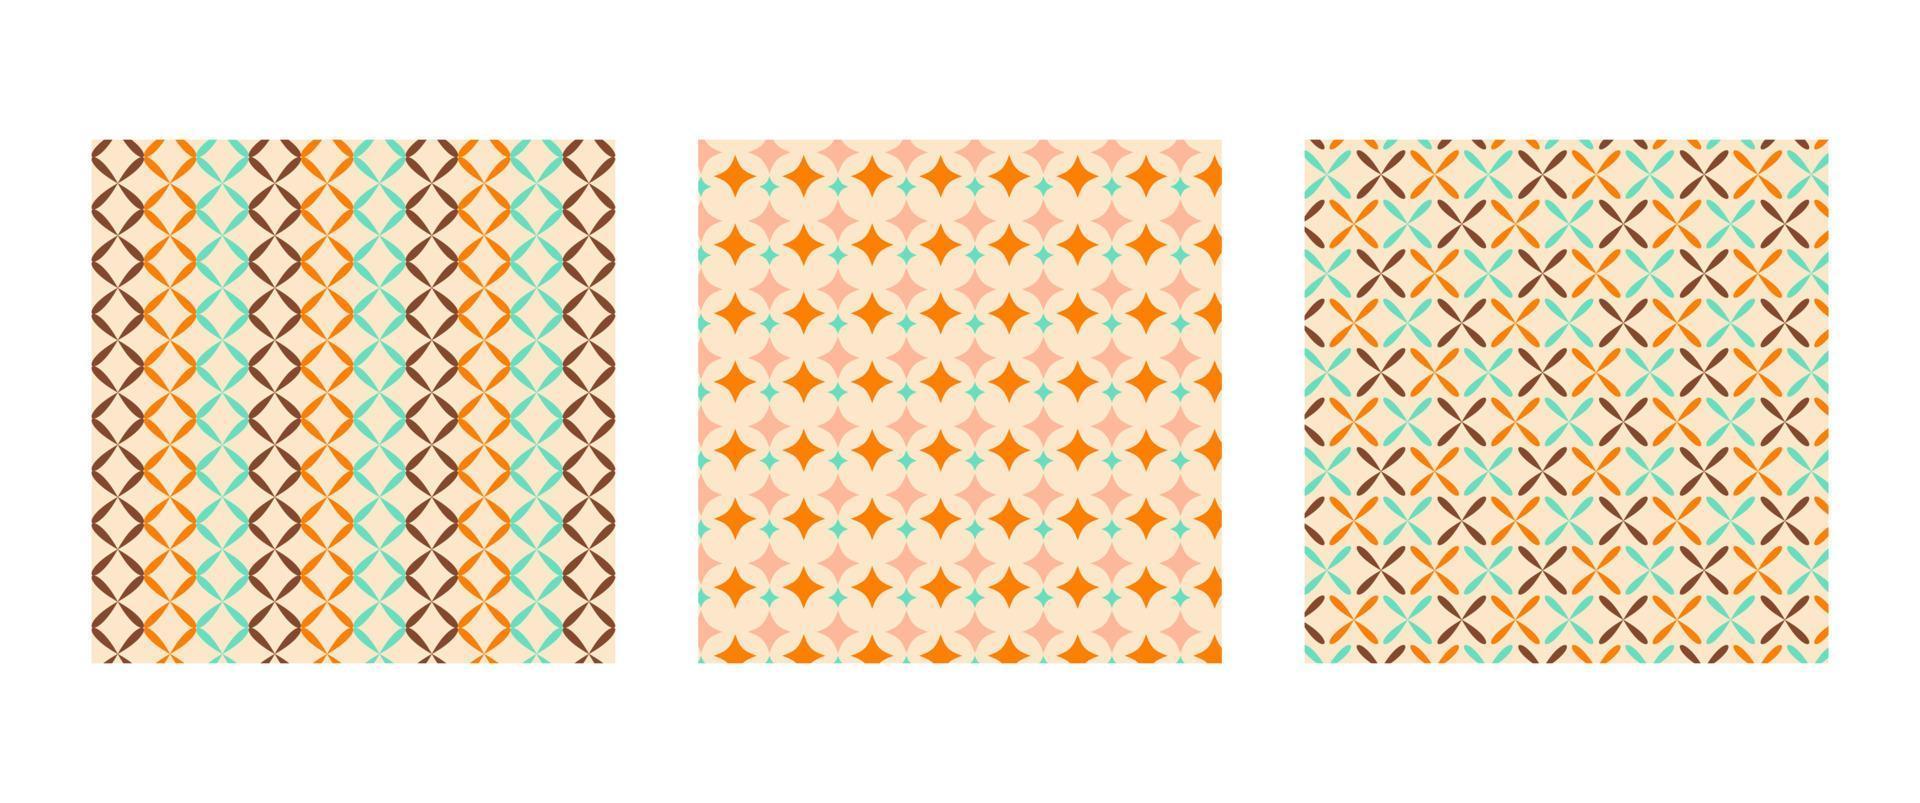 mitten århundrade modern mönster uppsättning. geometrisk färgrik bakgrunder för strö, bordsduk, vaxduk eller Övrig textil- design i retro stil vektor